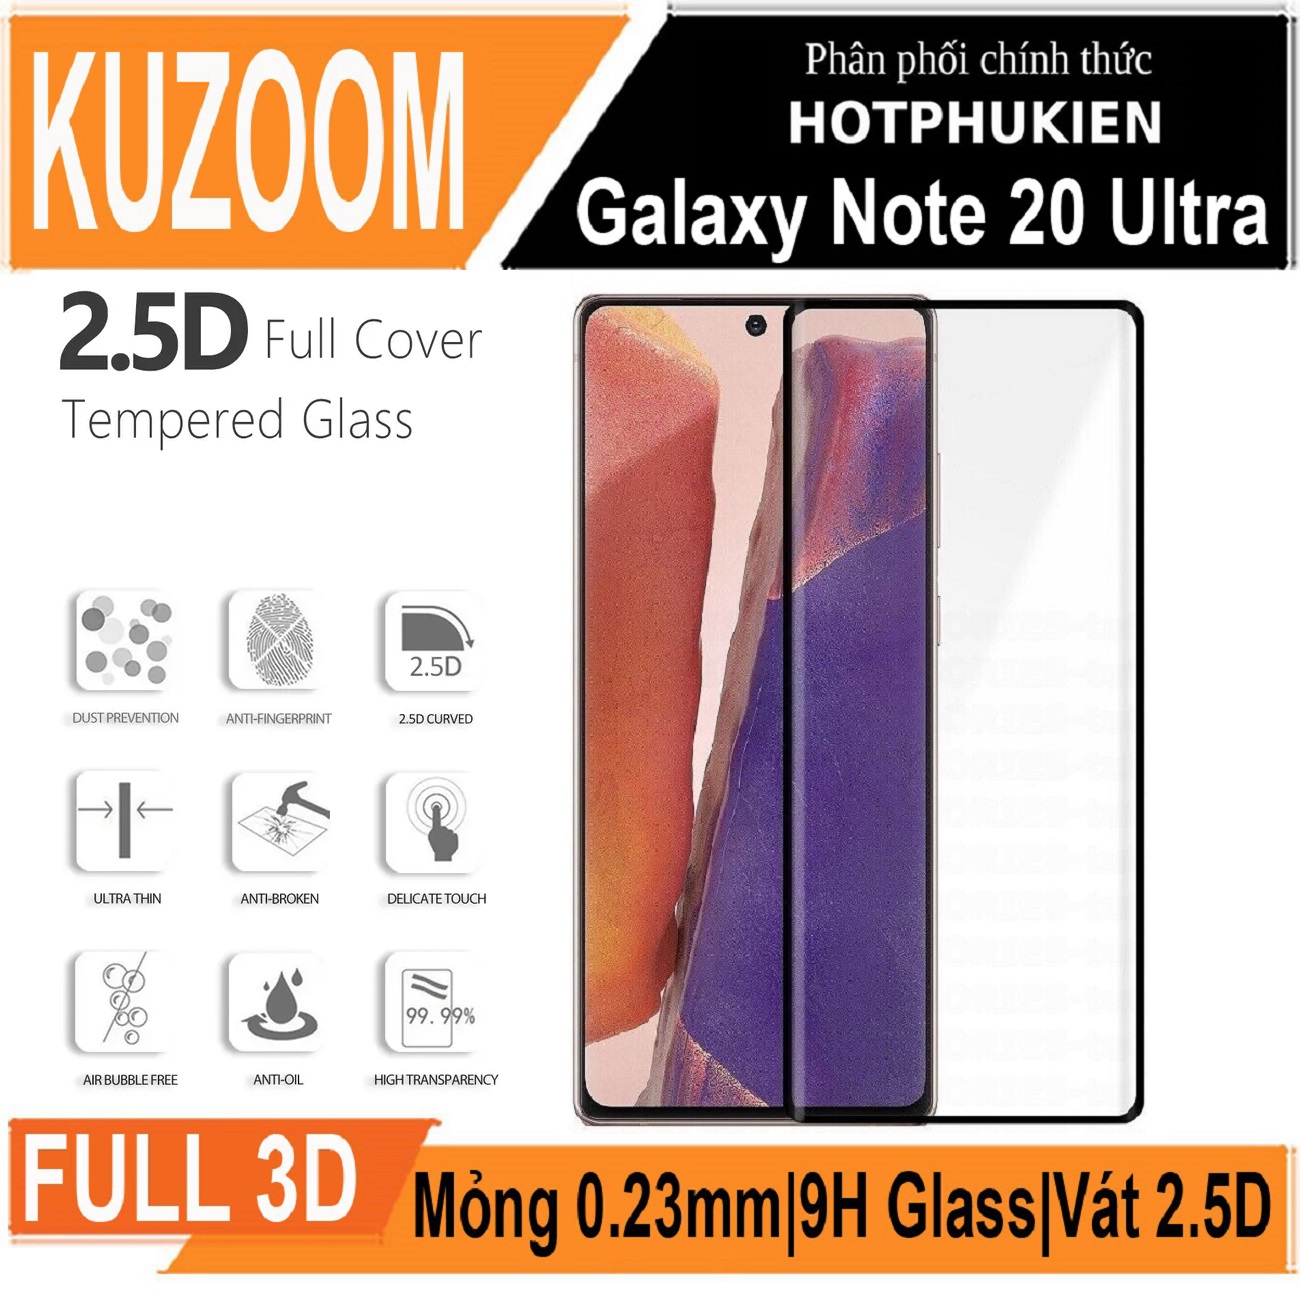 Miếng dán kính cường lực 3D cho Samsung Galaxy Note 20 Ultra hiệu Kuzoom Protective Glass - mỏng 0.3mm, vát cạnh 2.5D, độ cứng 9H, viền cứng mỏng